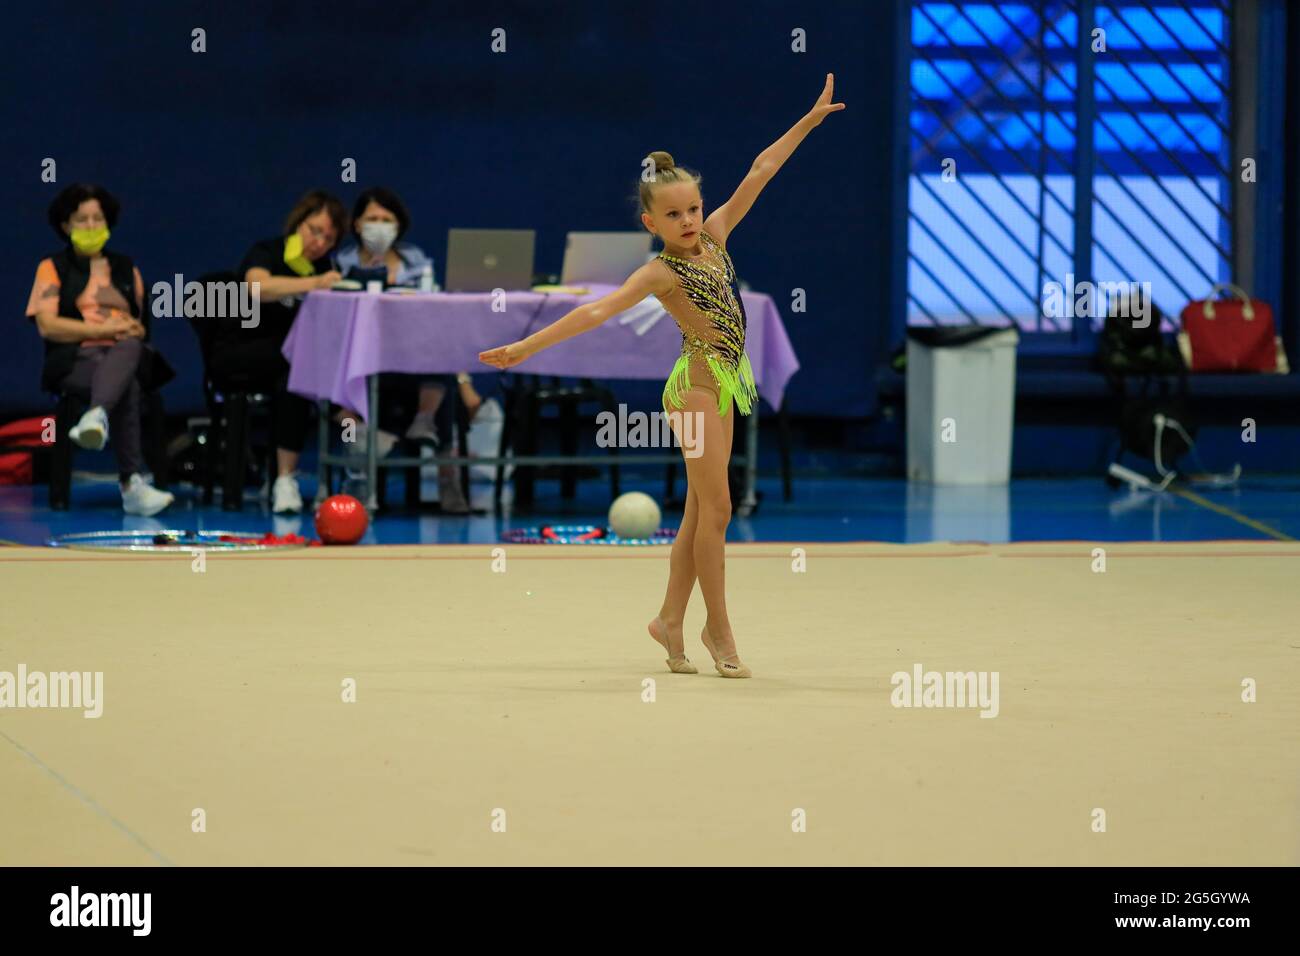 Porträt einer jungen Turnerin. Porträt eines 8-jährigen Mädchens in rhythmischen Turnwettbewerben Stockfoto